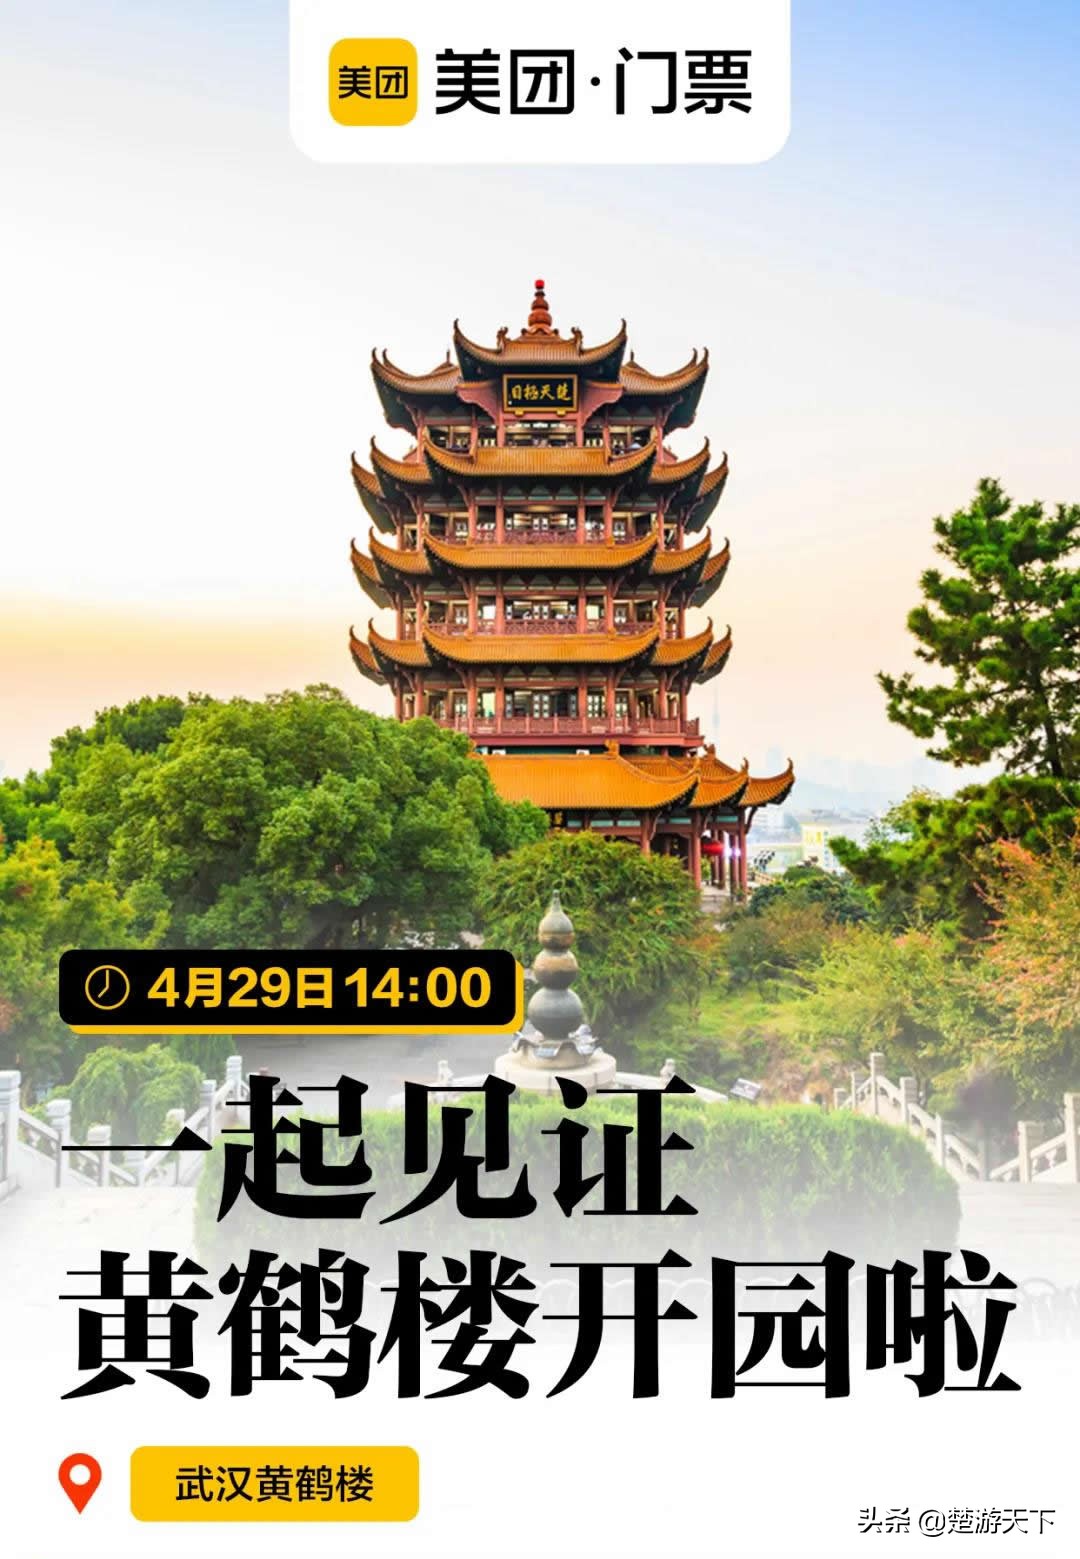 武汉黄鹤楼4月29日恢复开放，门票价格降了，还有免费年票领